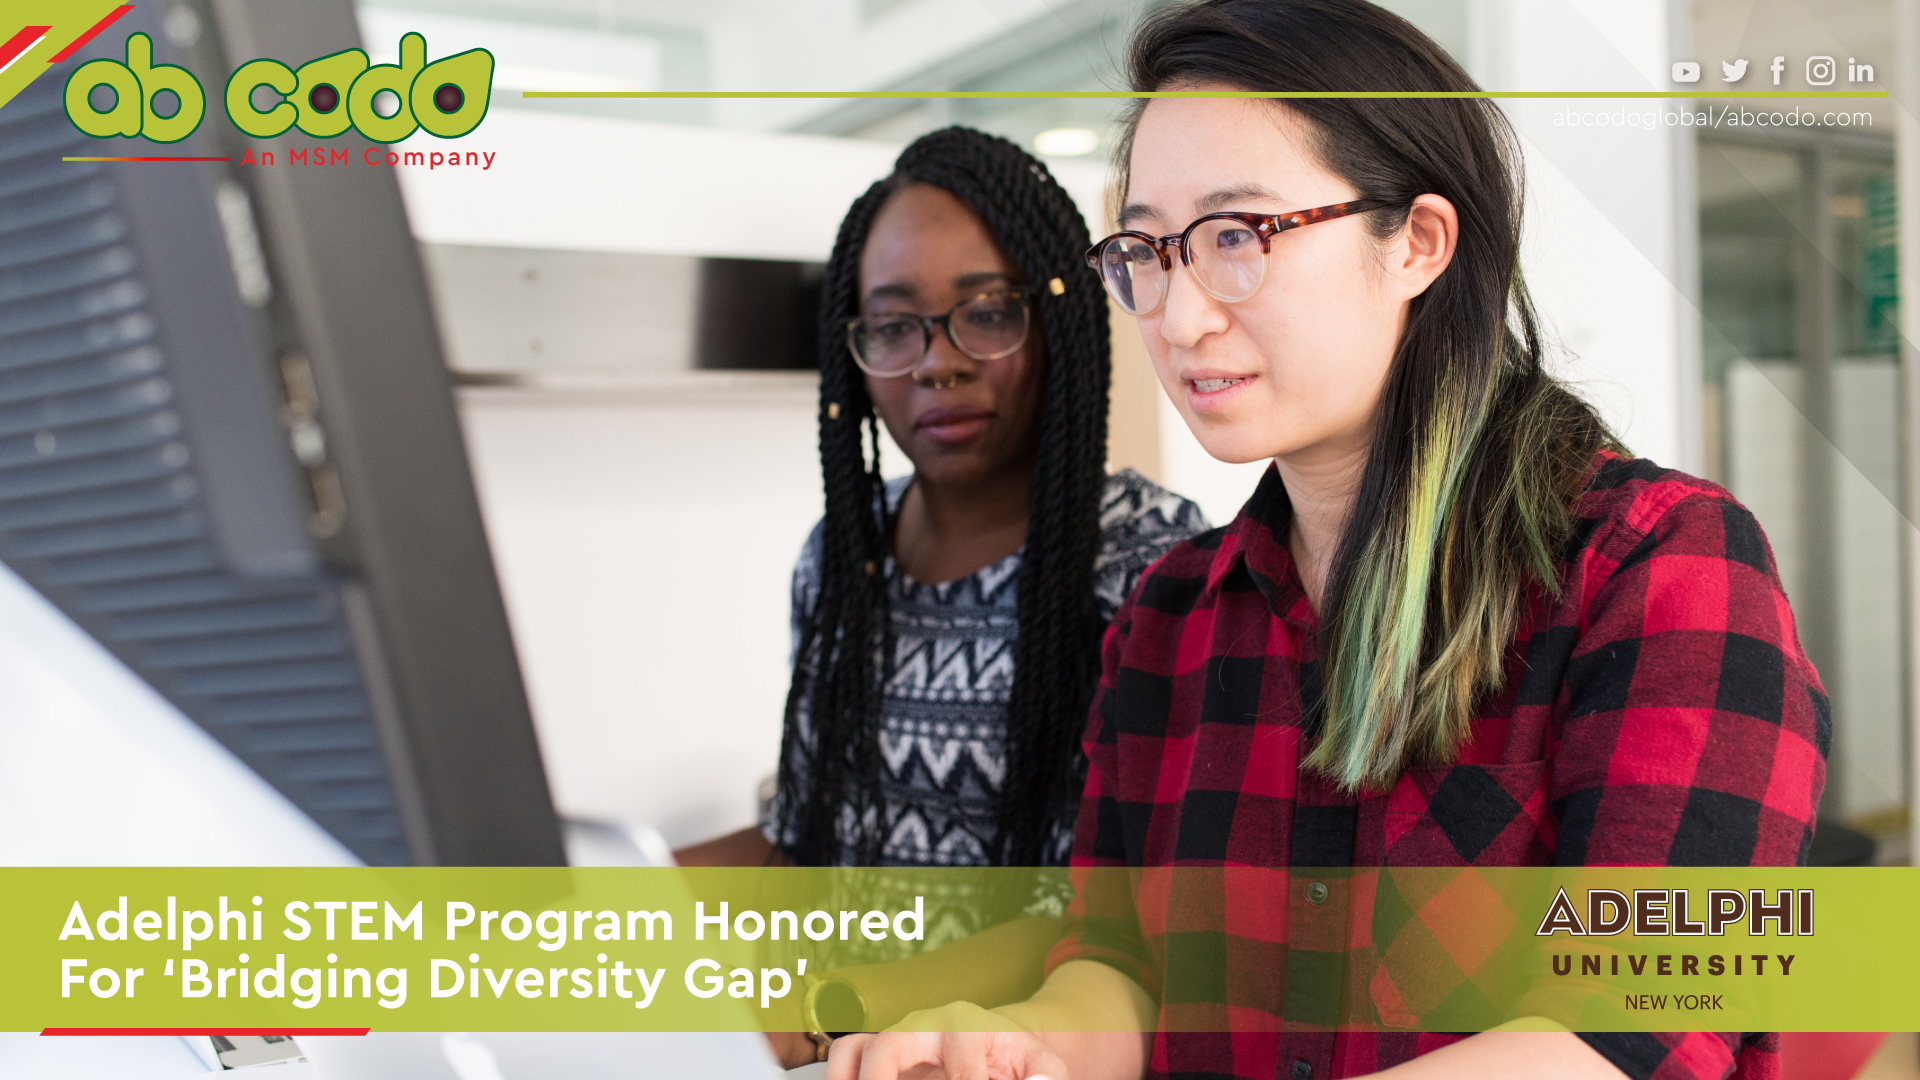 Adelphi STEM Program Honored for ‘Bridging Diversity Gap’